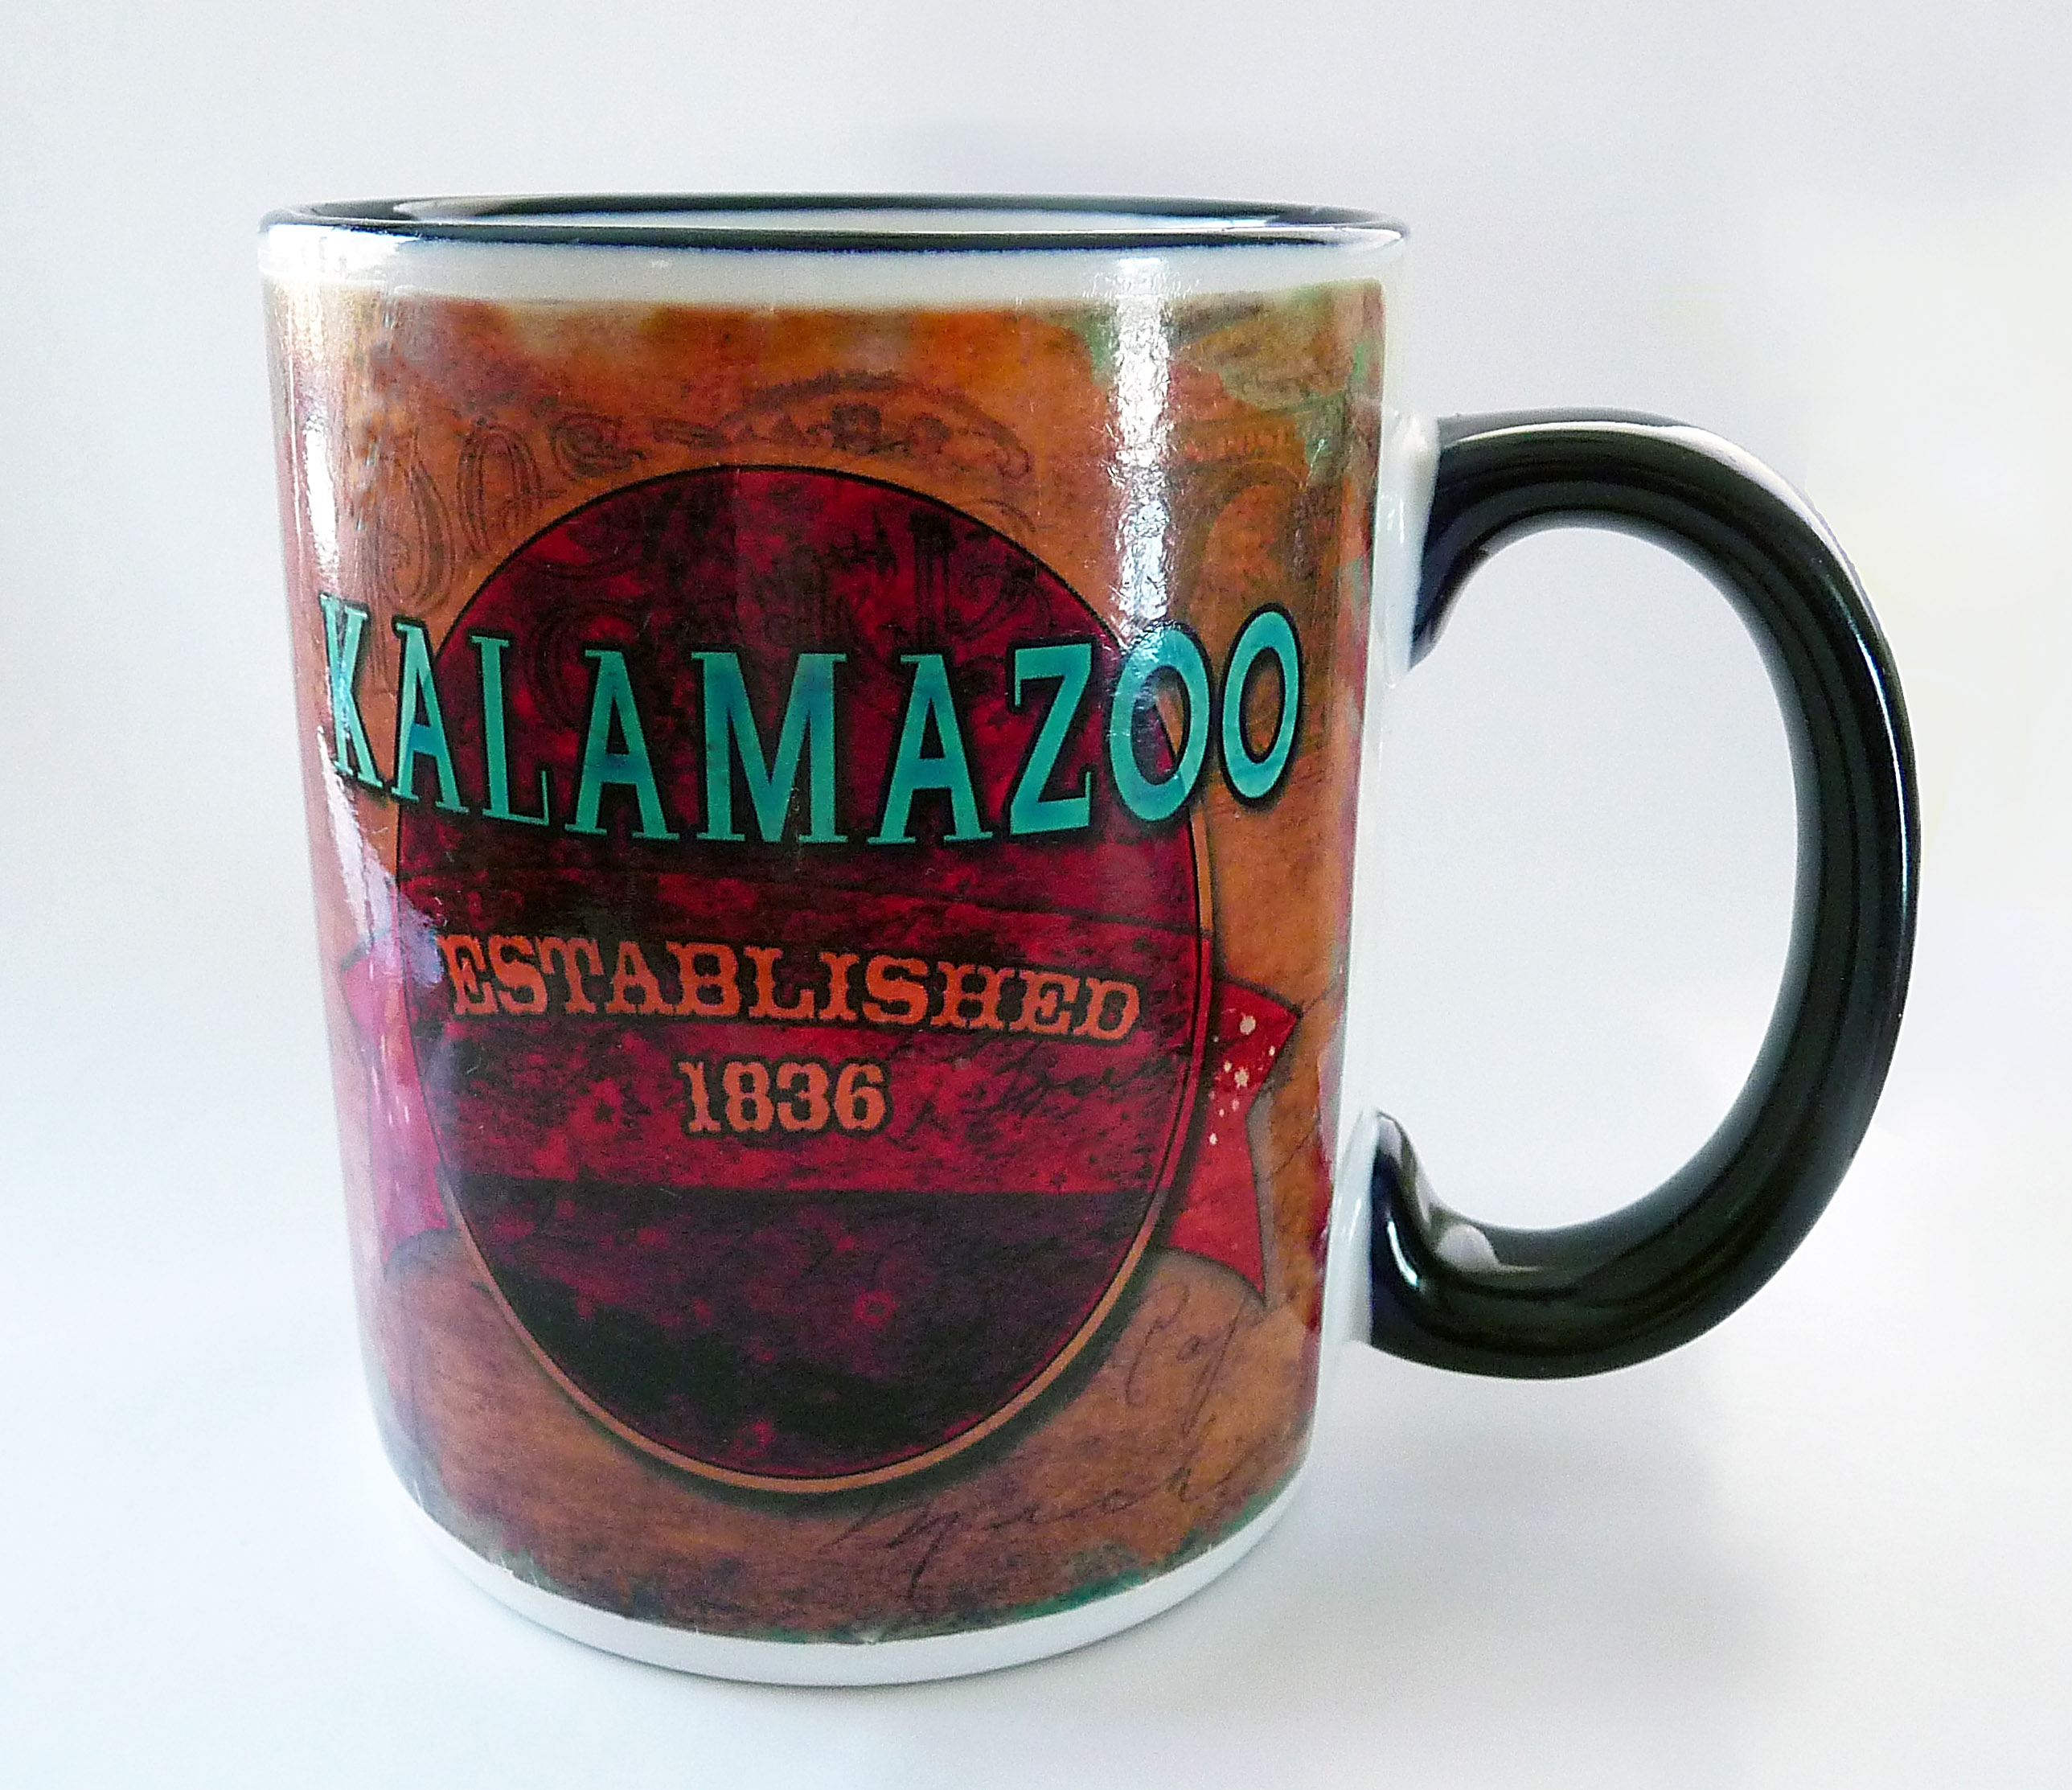 Kalamazoo mug wrap1